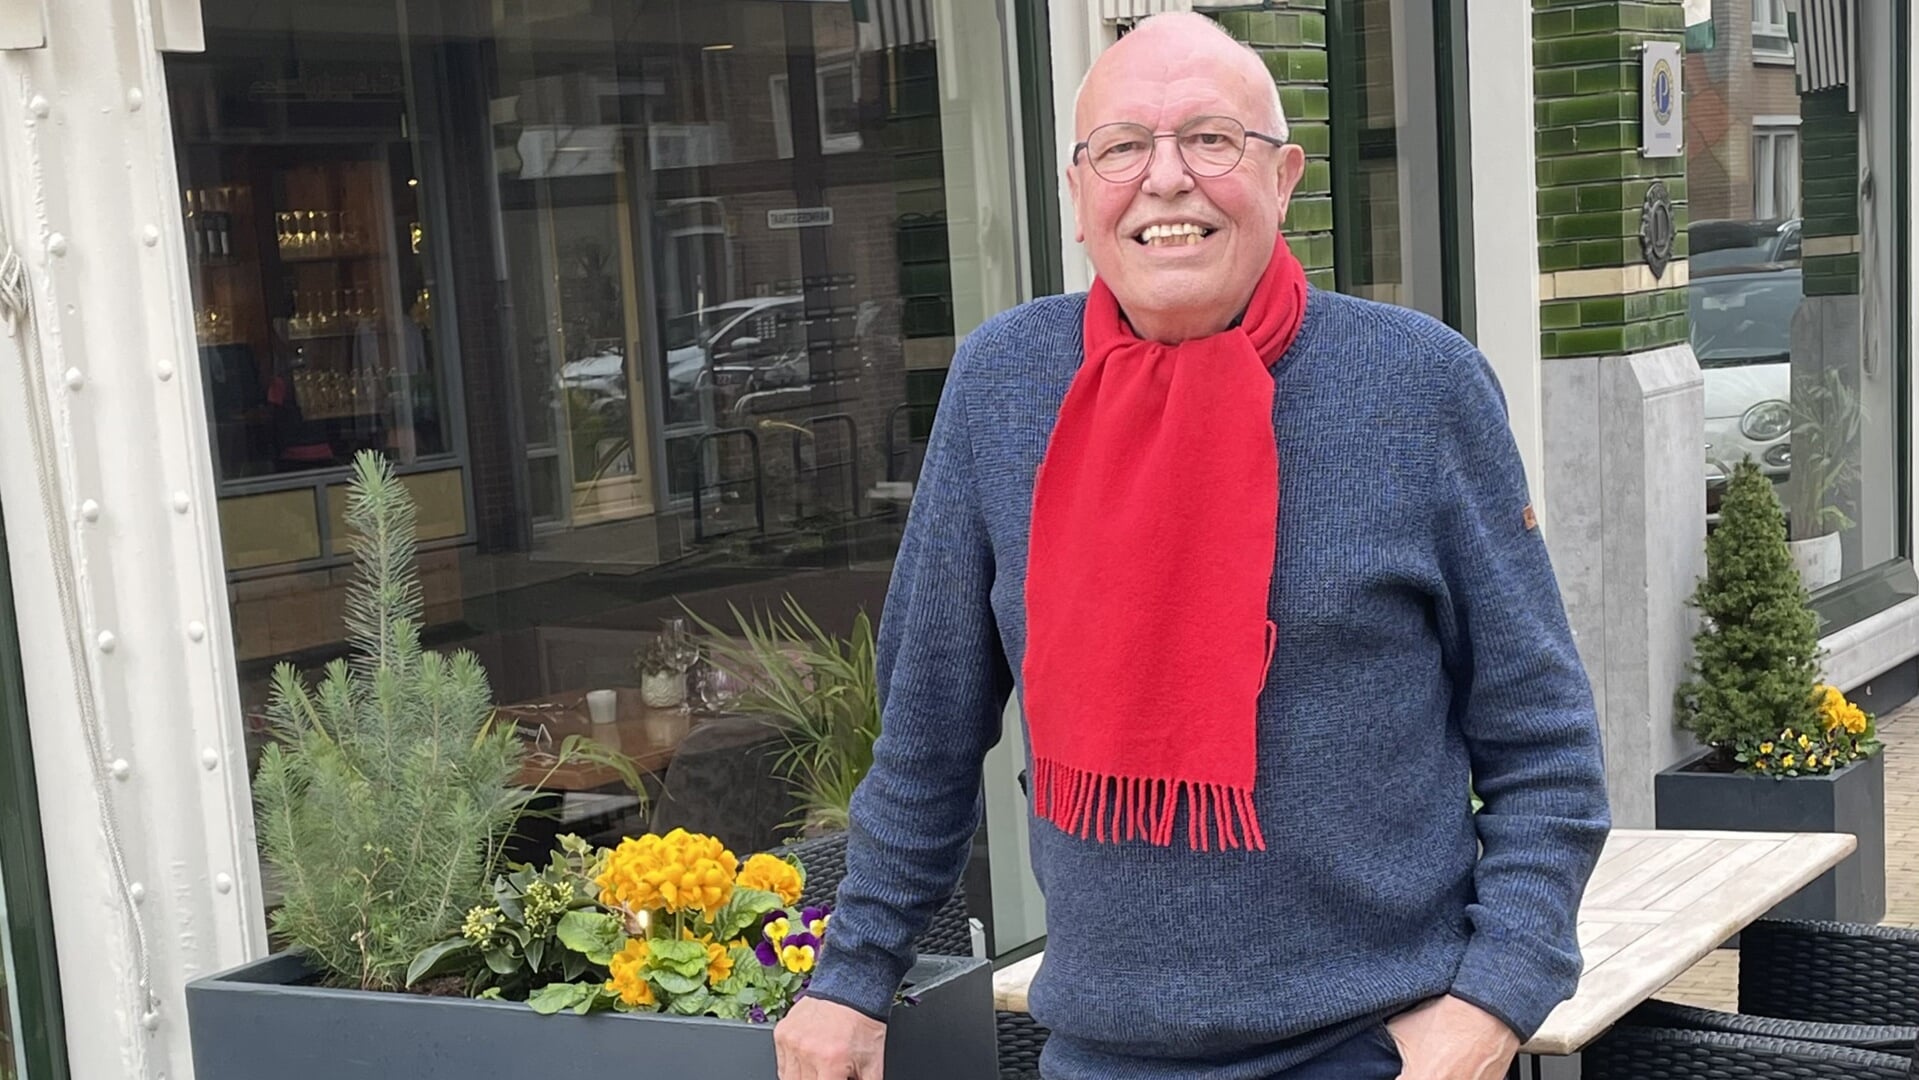 Jack Oostrum met zijn onafscheidelijke rode sjaal